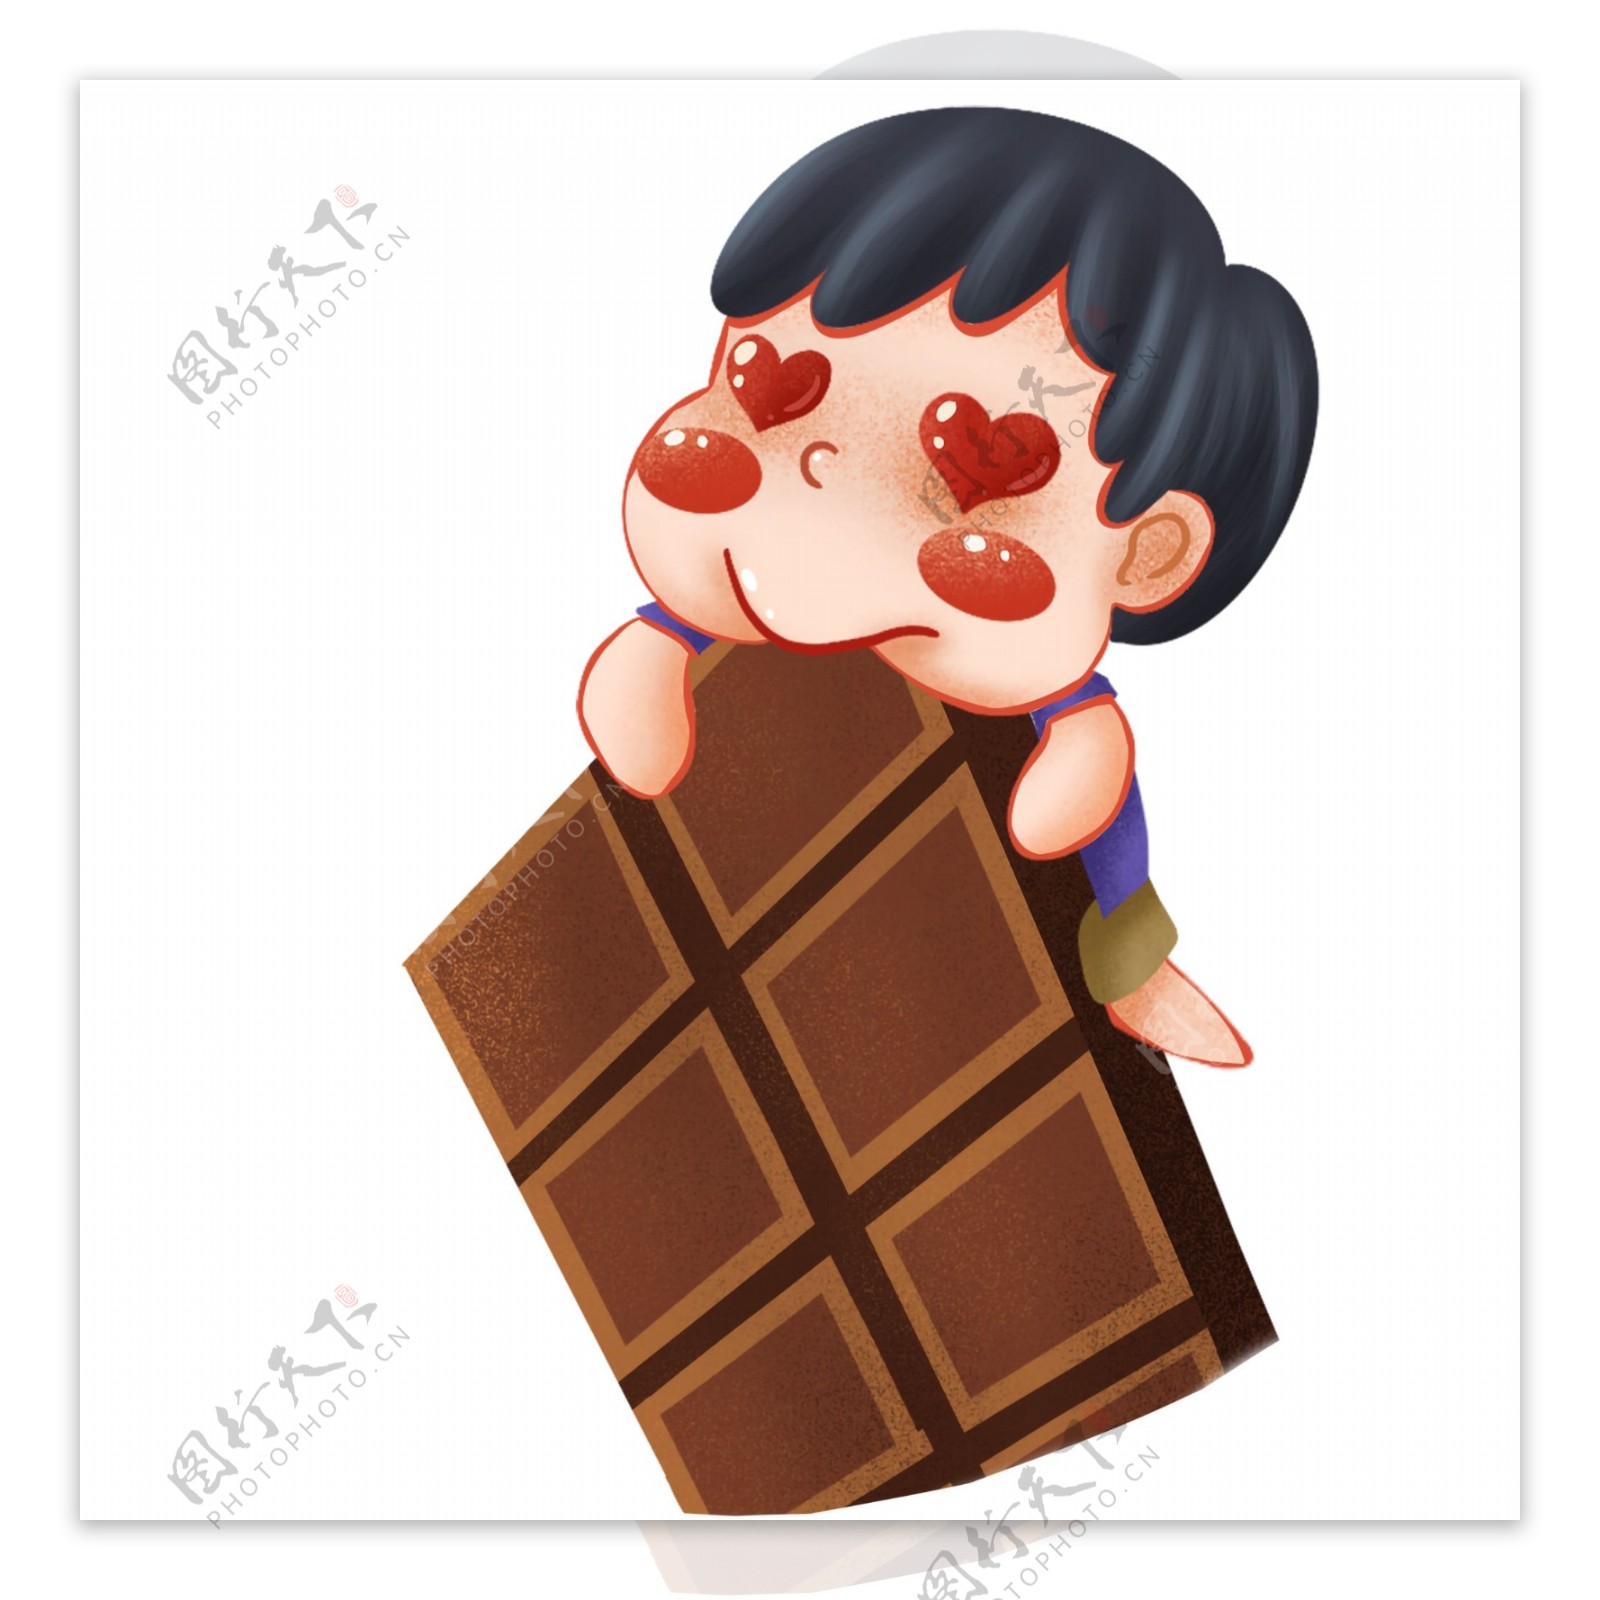 卡通可爱吃巧克力的男孩